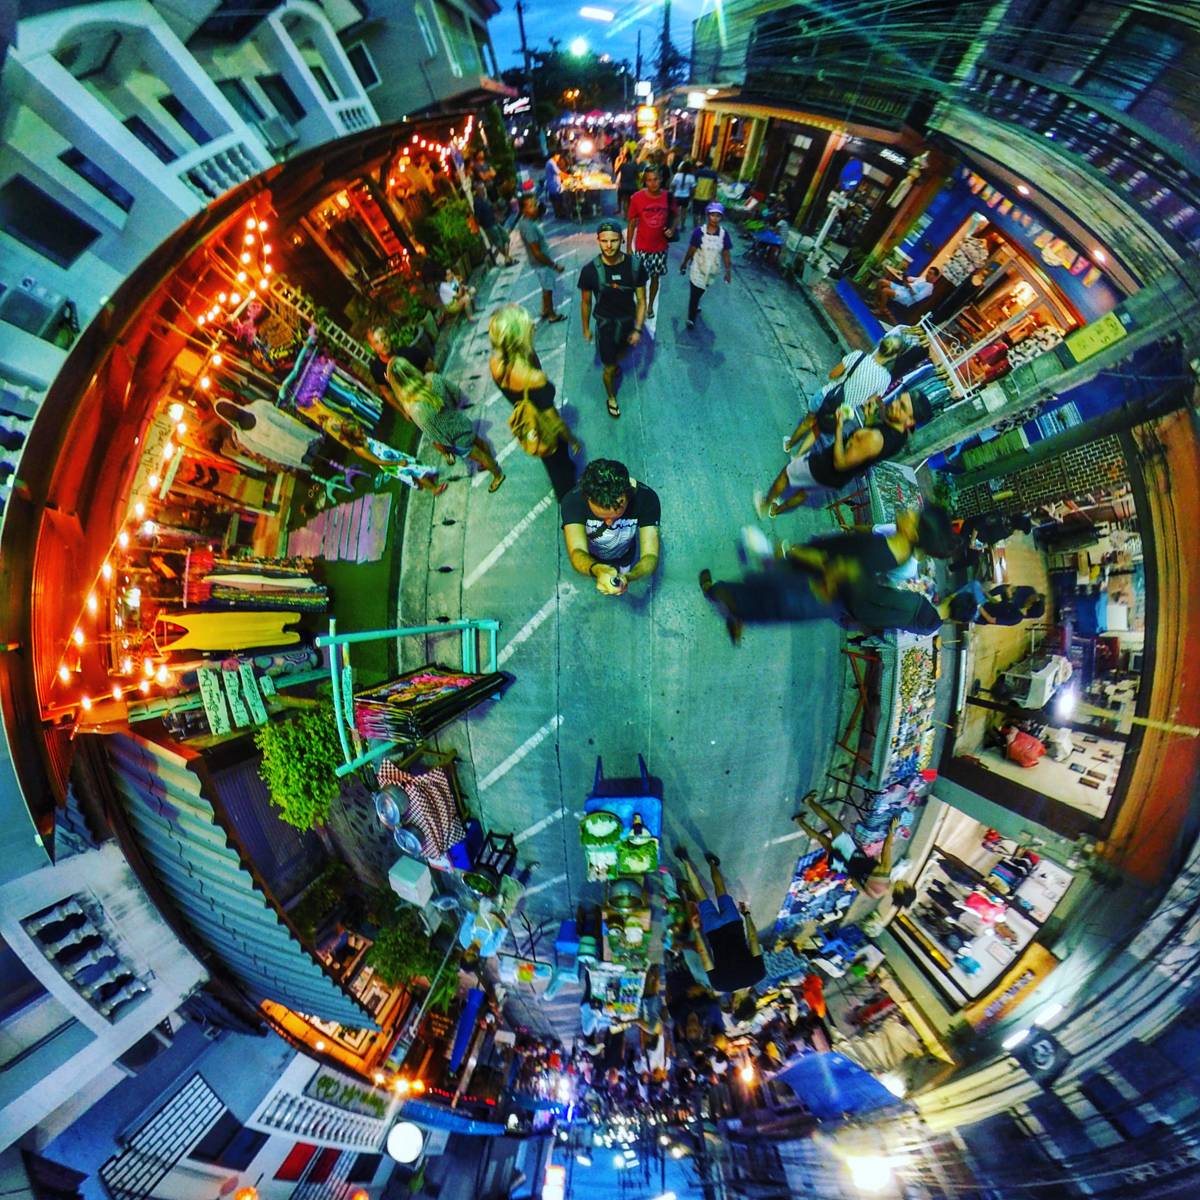 Thong Sala Night Market in 360